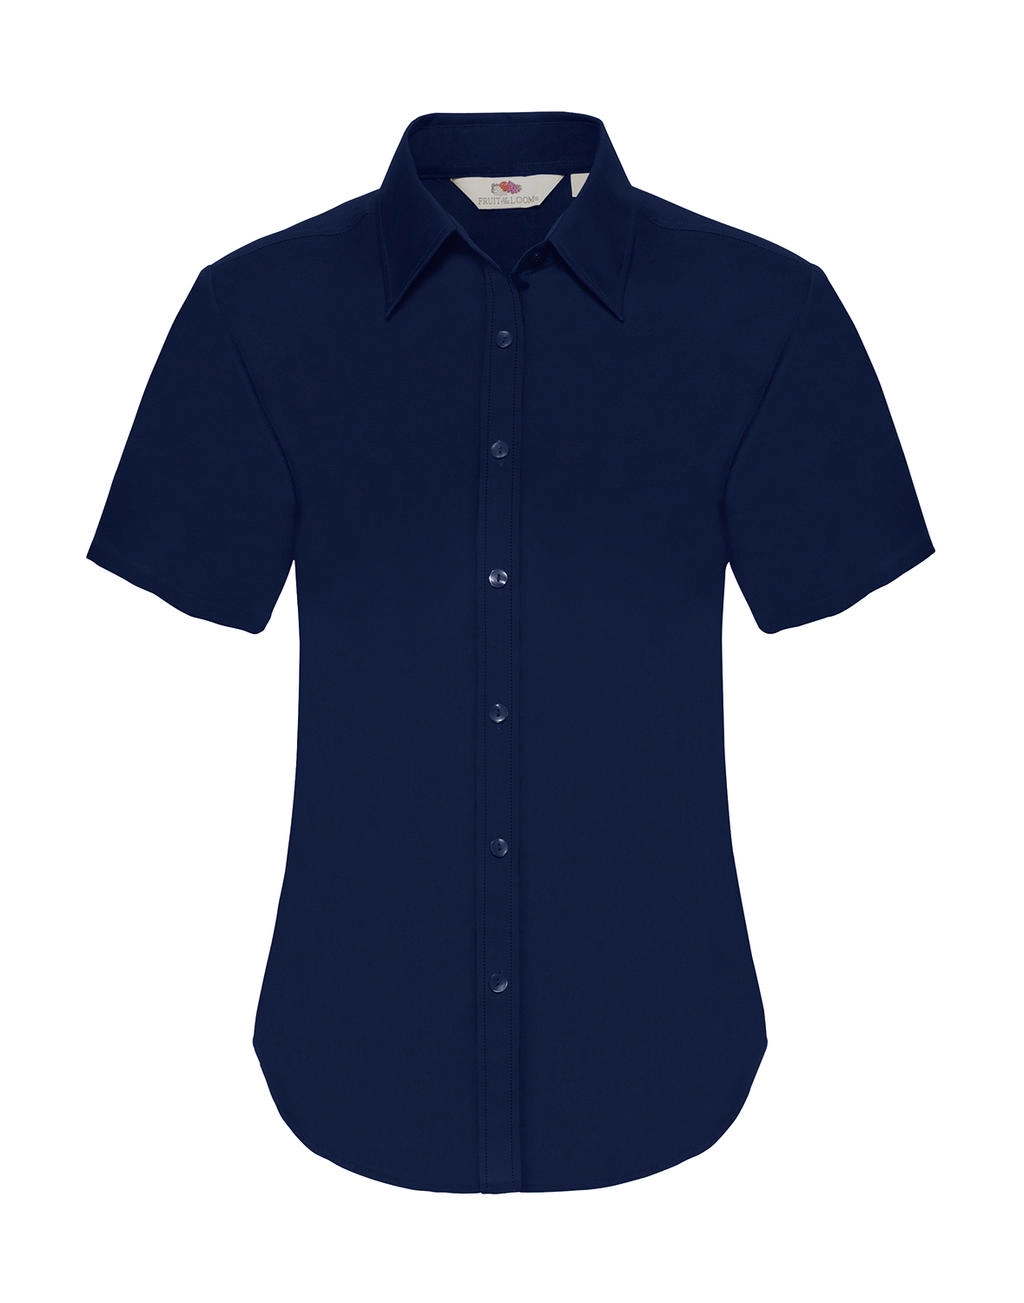 Ladies Oxford Shirt zum Besticken und Bedrucken in der Farbe Navy mit Ihren Logo, Schriftzug oder Motiv.